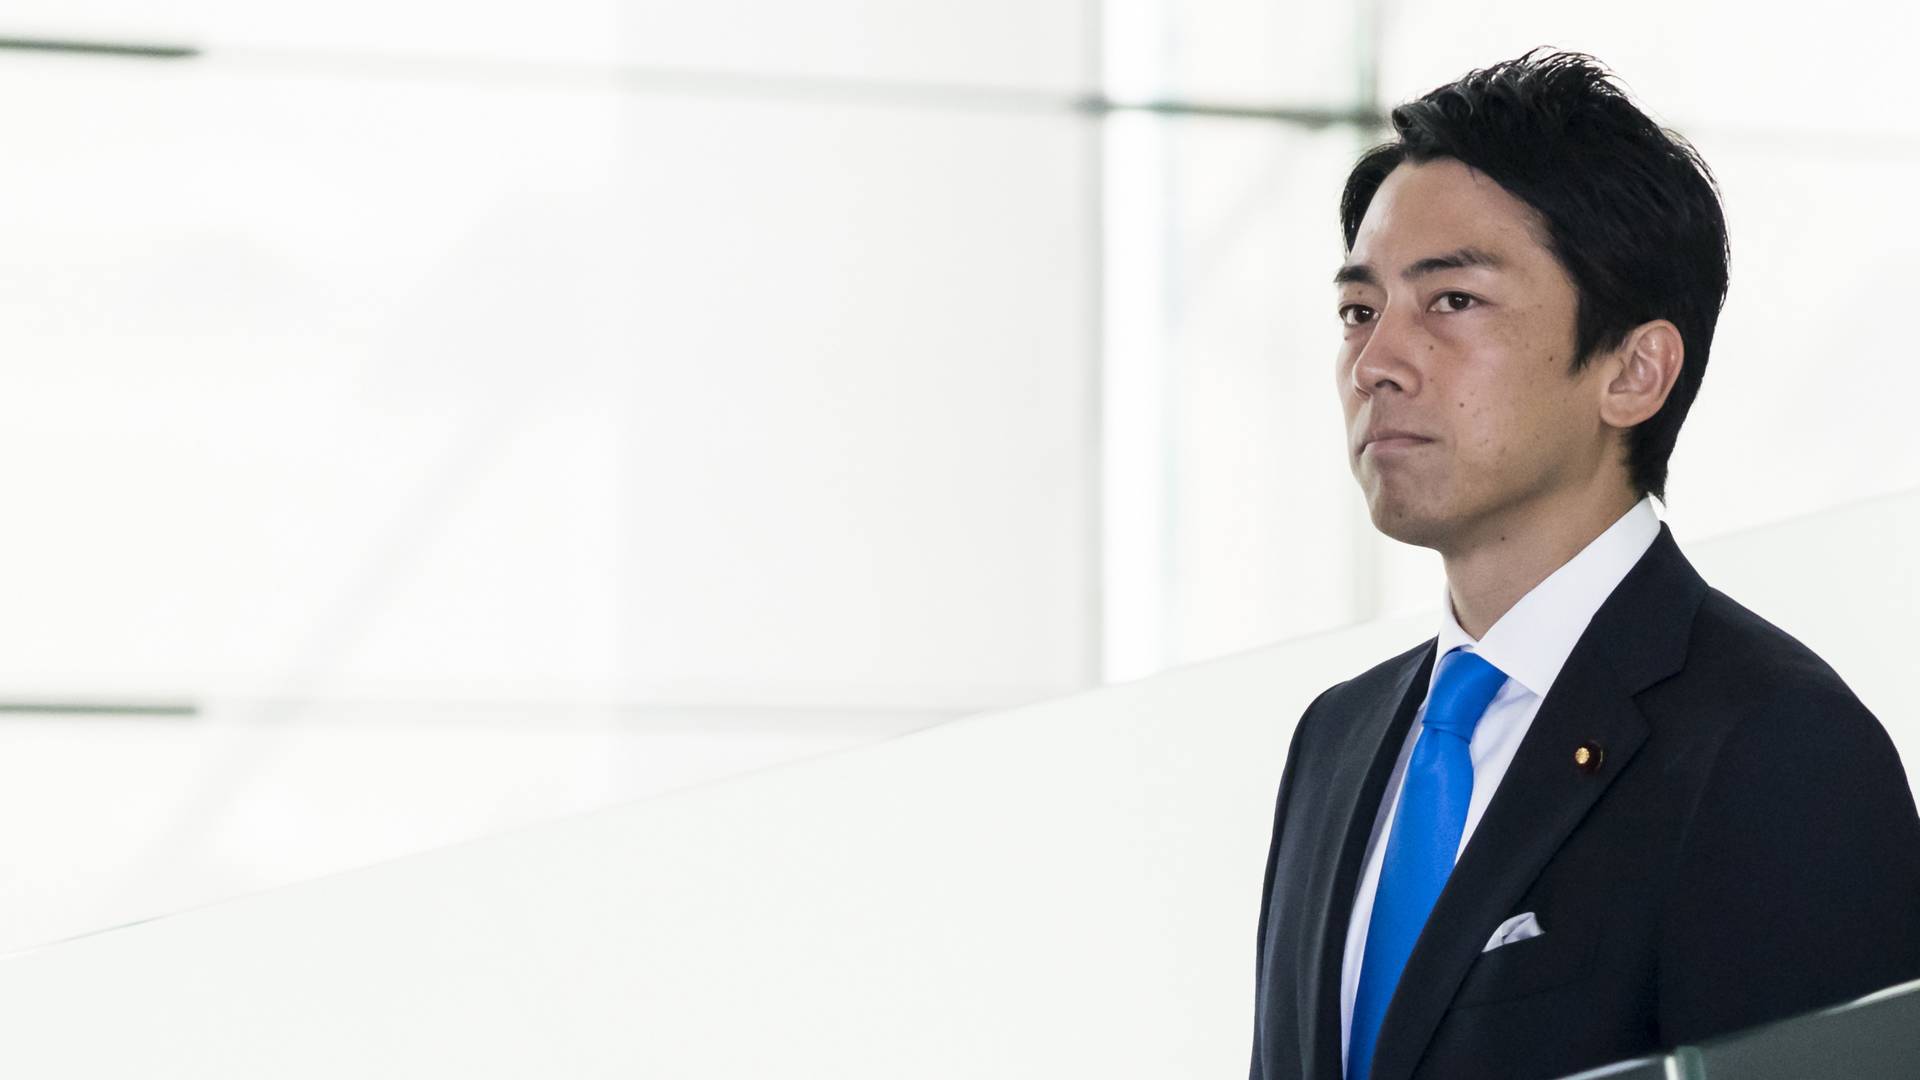 Minister Koizumi idzie na dwa tygodnie urlopu ojcowskiego. Japończycy są w szoku